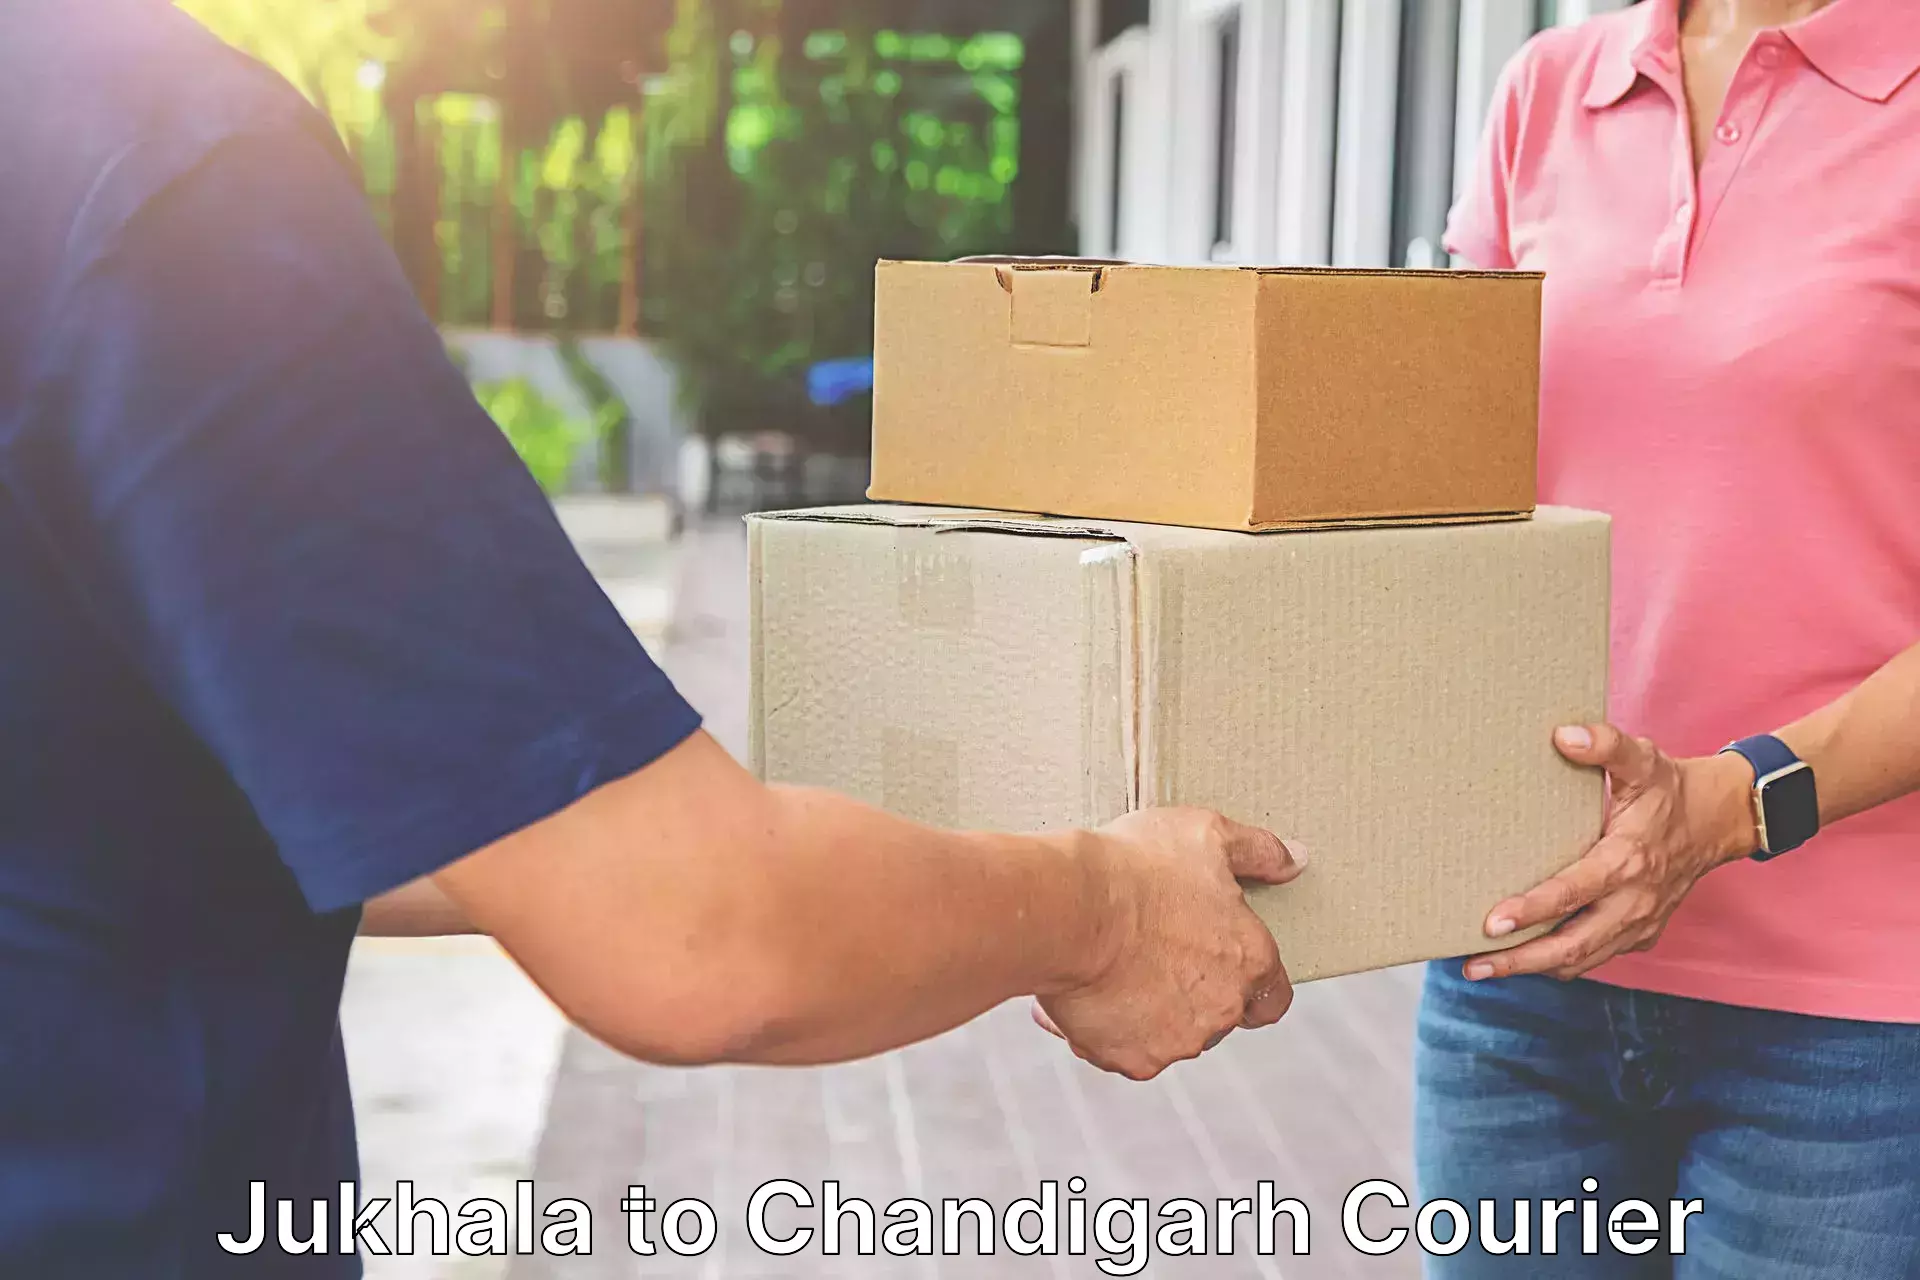 Fast delivery service Jukhala to Panjab University Chandigarh